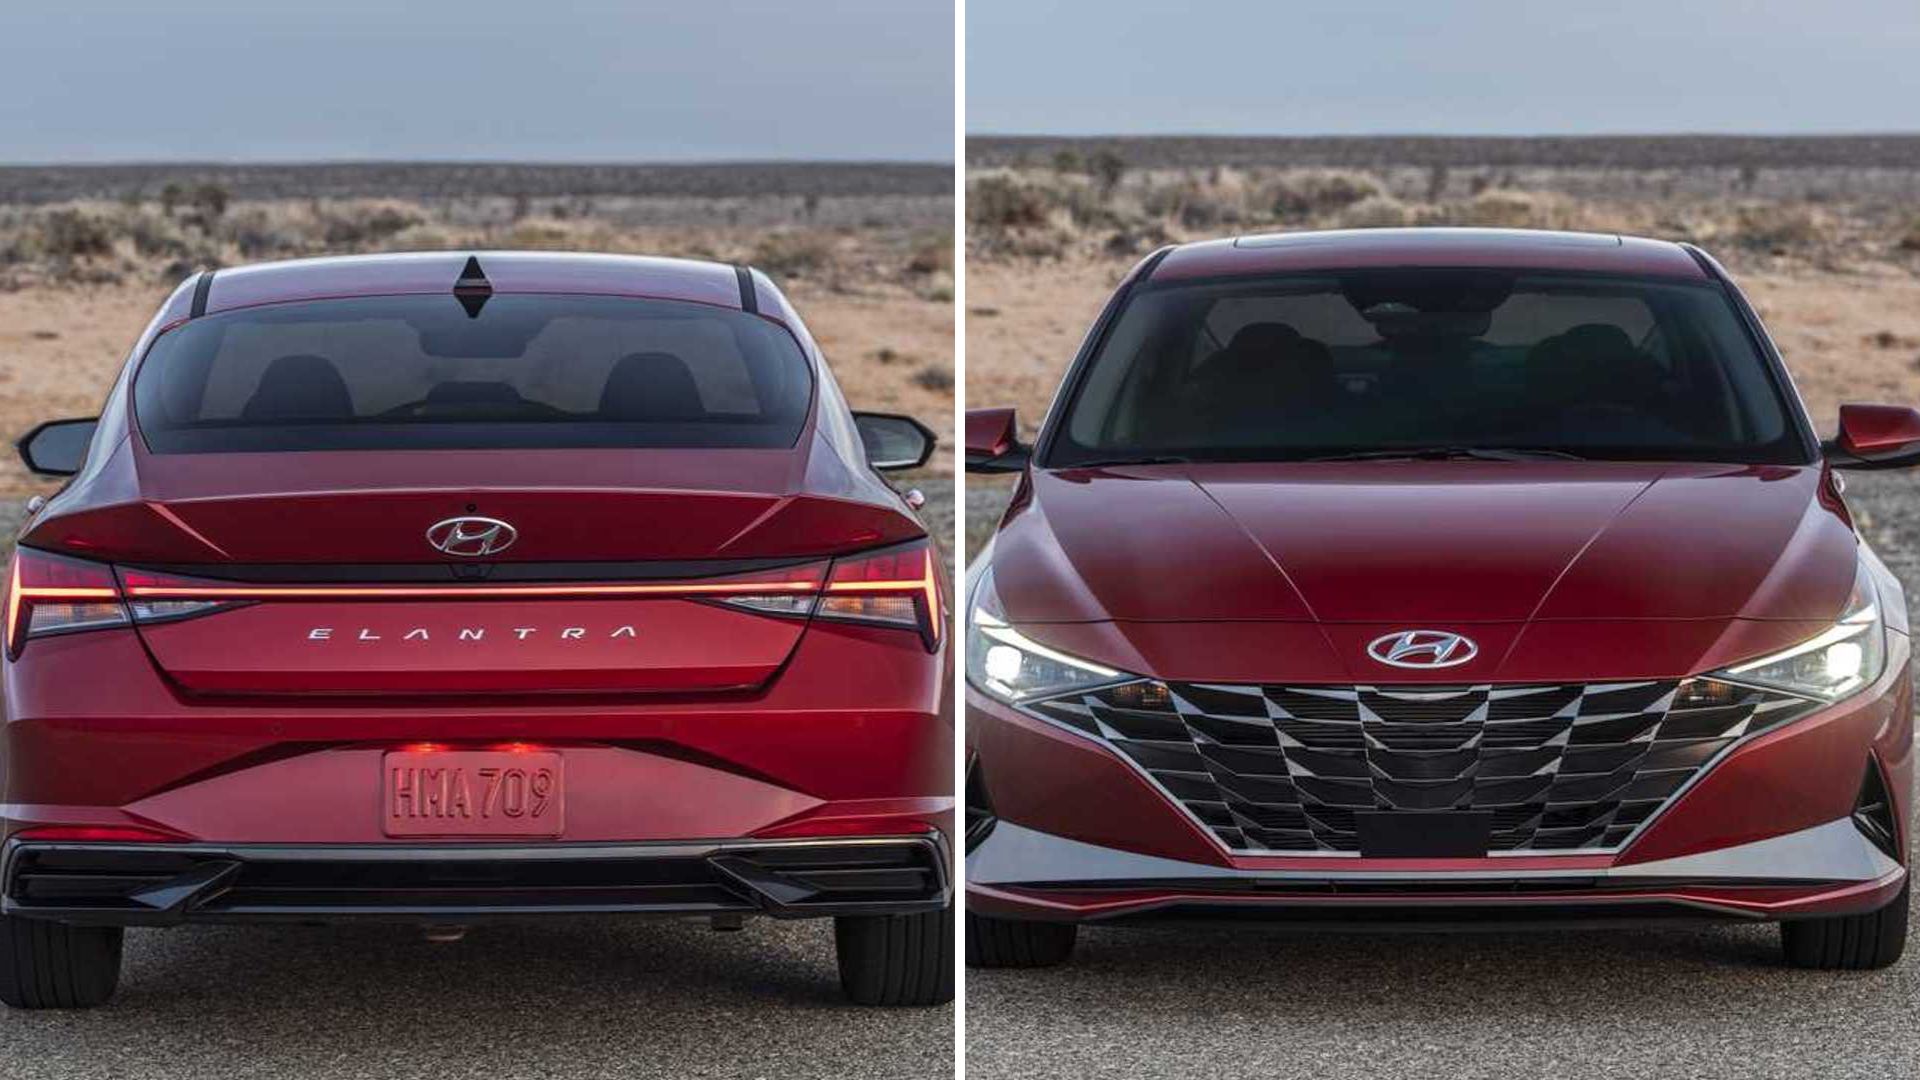 Com design ousado, novo Hyundai Elantra 2024 tem fotos reveladas Portal Norte